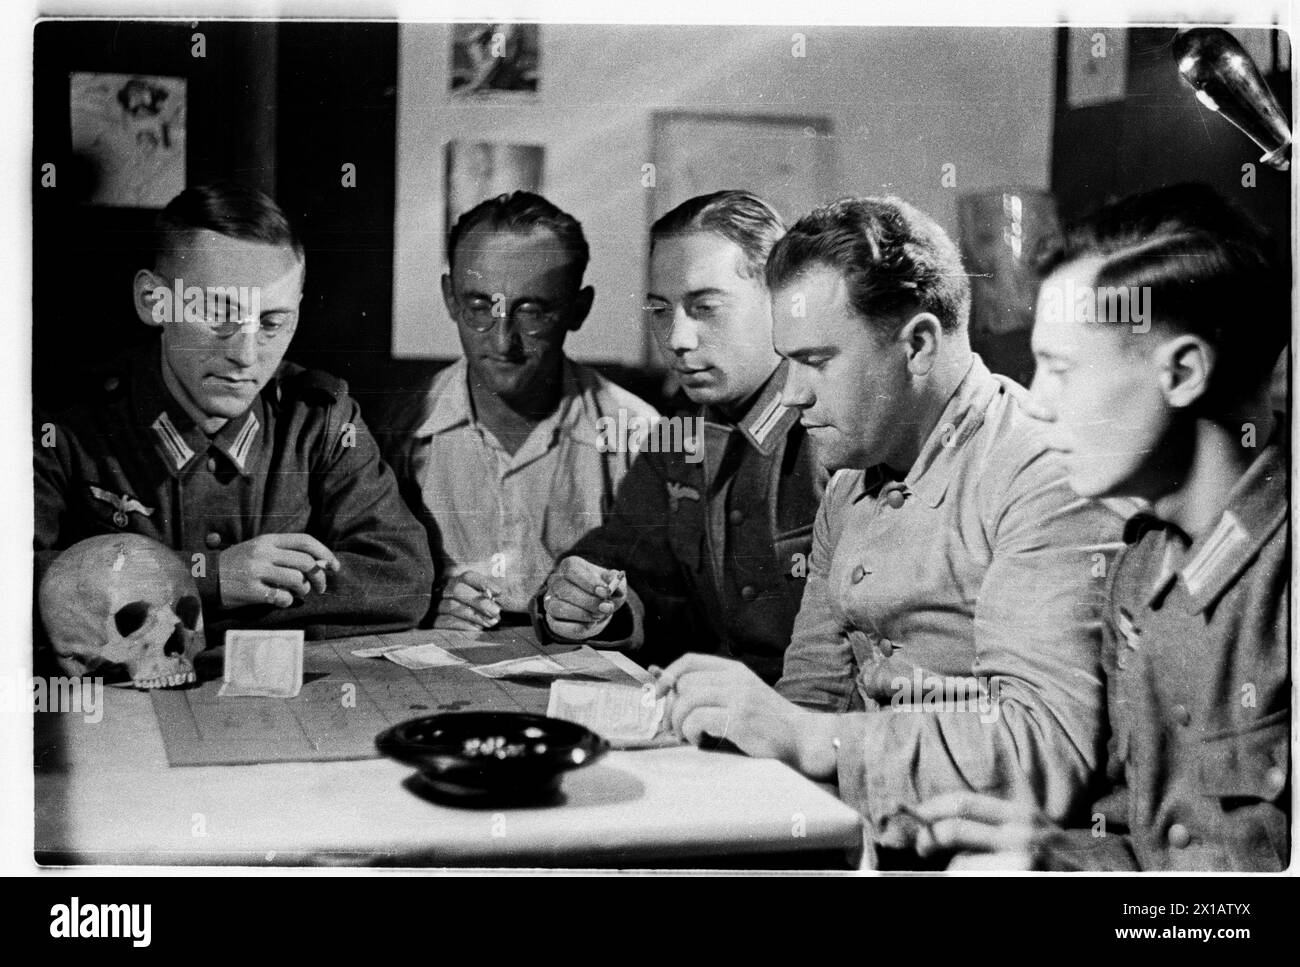 (Numero) cinque membri della Wehrmacht nel laboratorio di chimica dell'ex collegio dei gesuiti, membri dell'assemblea dei predicati di Heydecker spirito affine HEWEHOKIMA, così chiamato dopo la lettera iniziale dei nomi dei membri: He (Heydecker), WE (Wecke), HO (Hocke), KI (Vikar Kirsch) ma (Maecker) durante la partita della Roulette, con teschio e ossa incrociate, 1940 - 19400101 PD3496 - Rechteinfo: Rights Managed (RM) Foto Stock